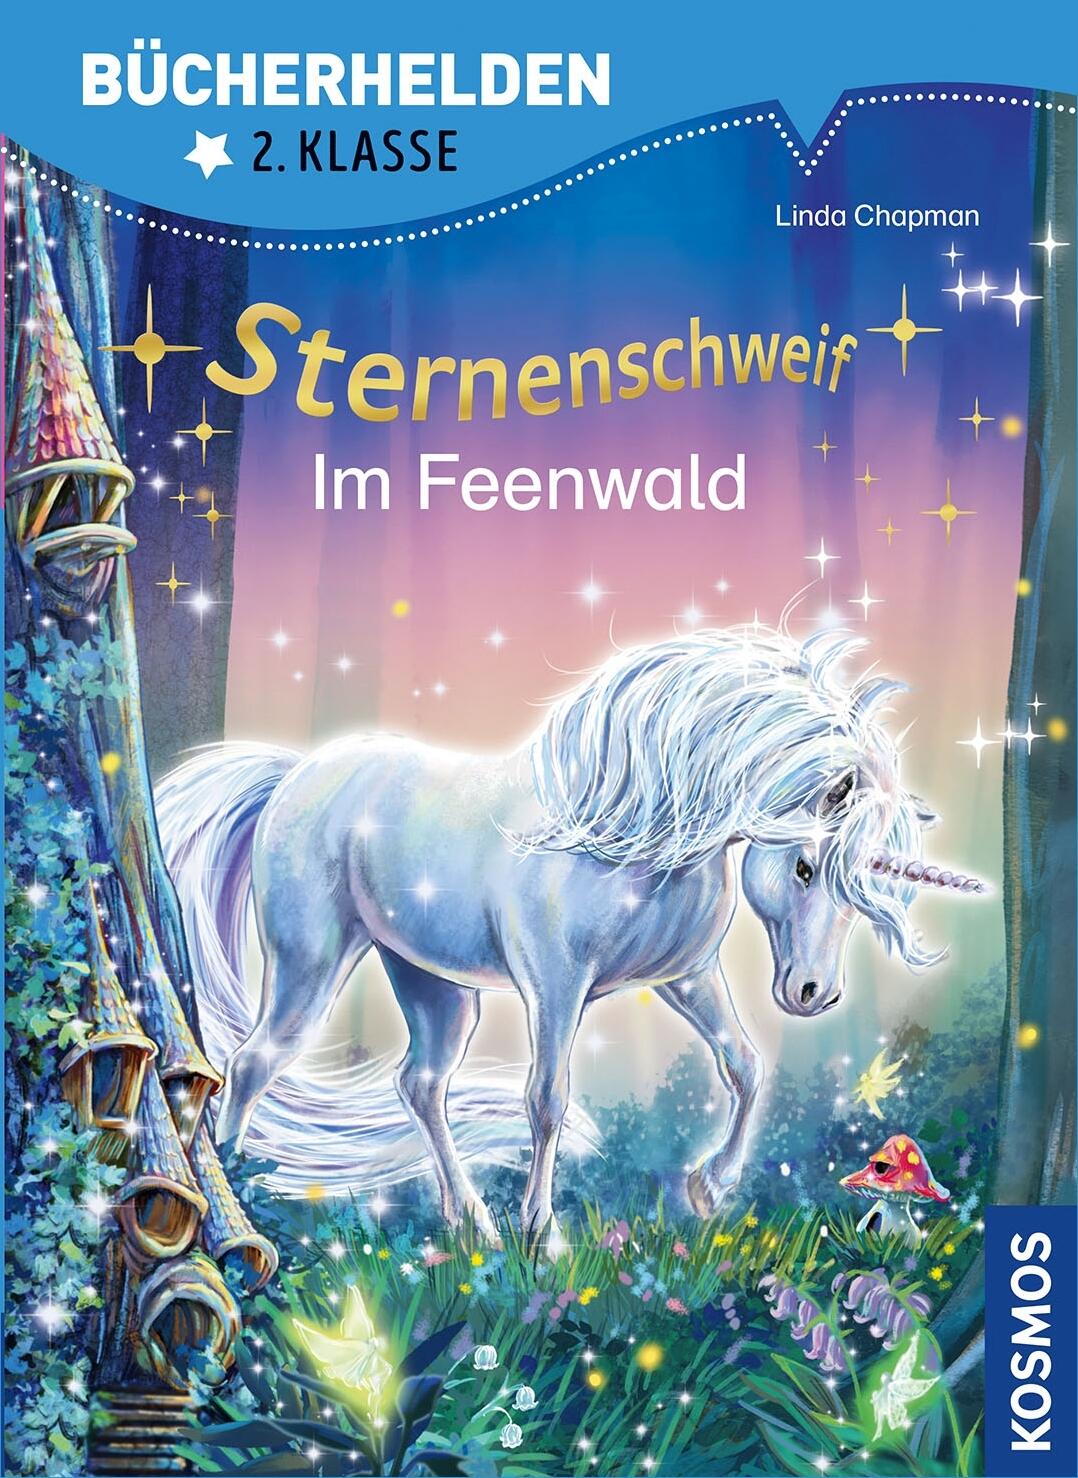 Bücherhelden 2. Kl.: Sternenschweif - Im Feenwald